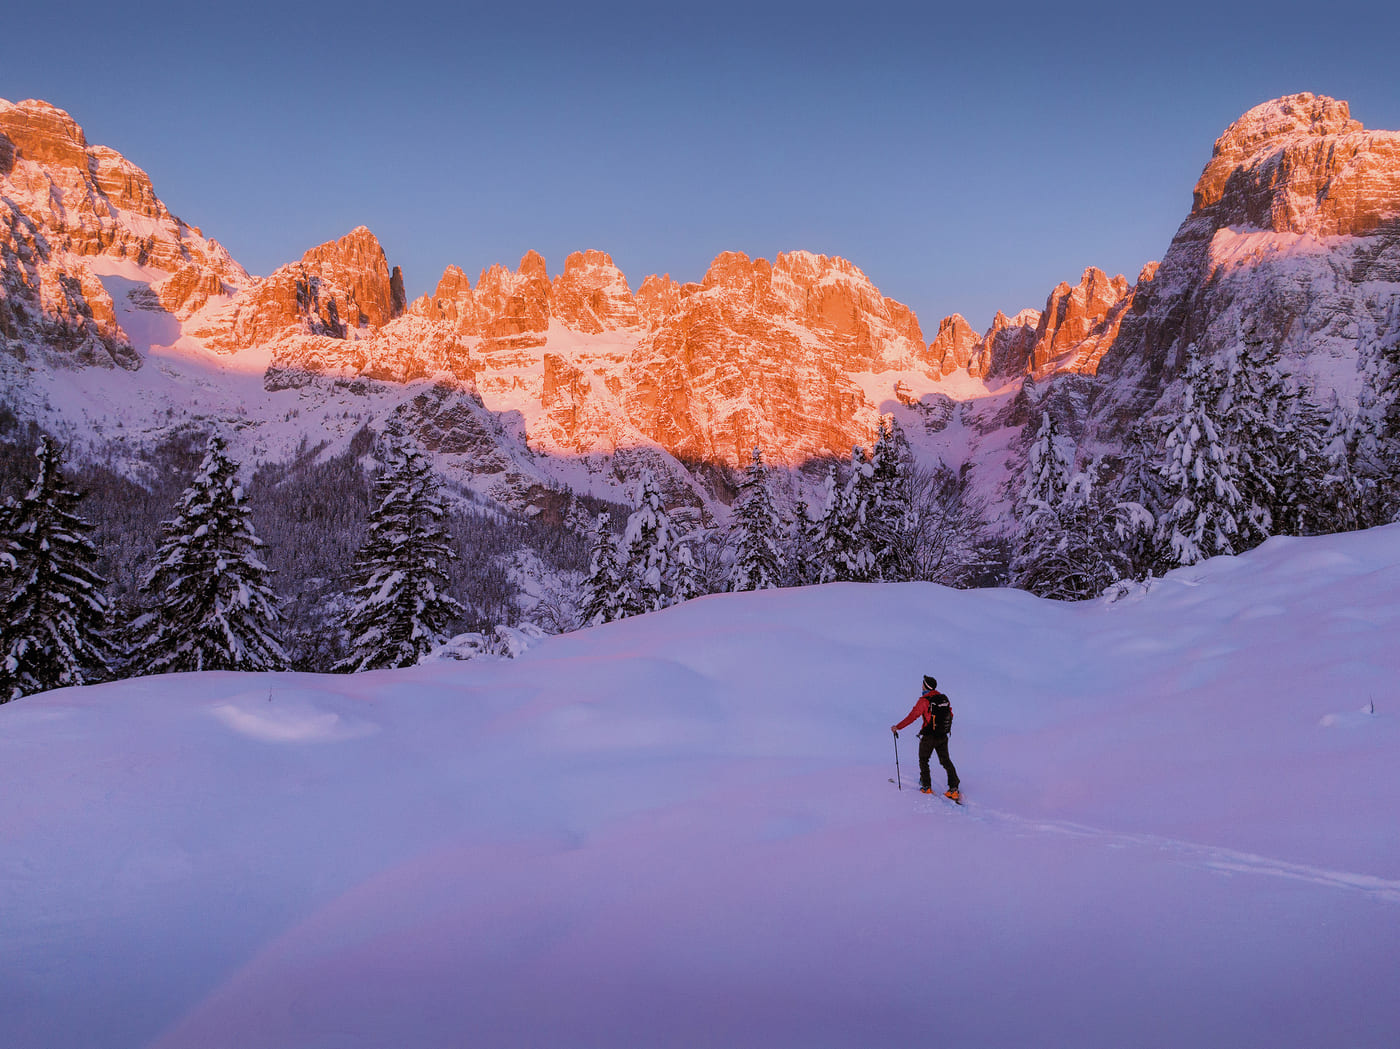 Arriva l'inverno in Dolomiti Paganella: la neve per tutti i gusti